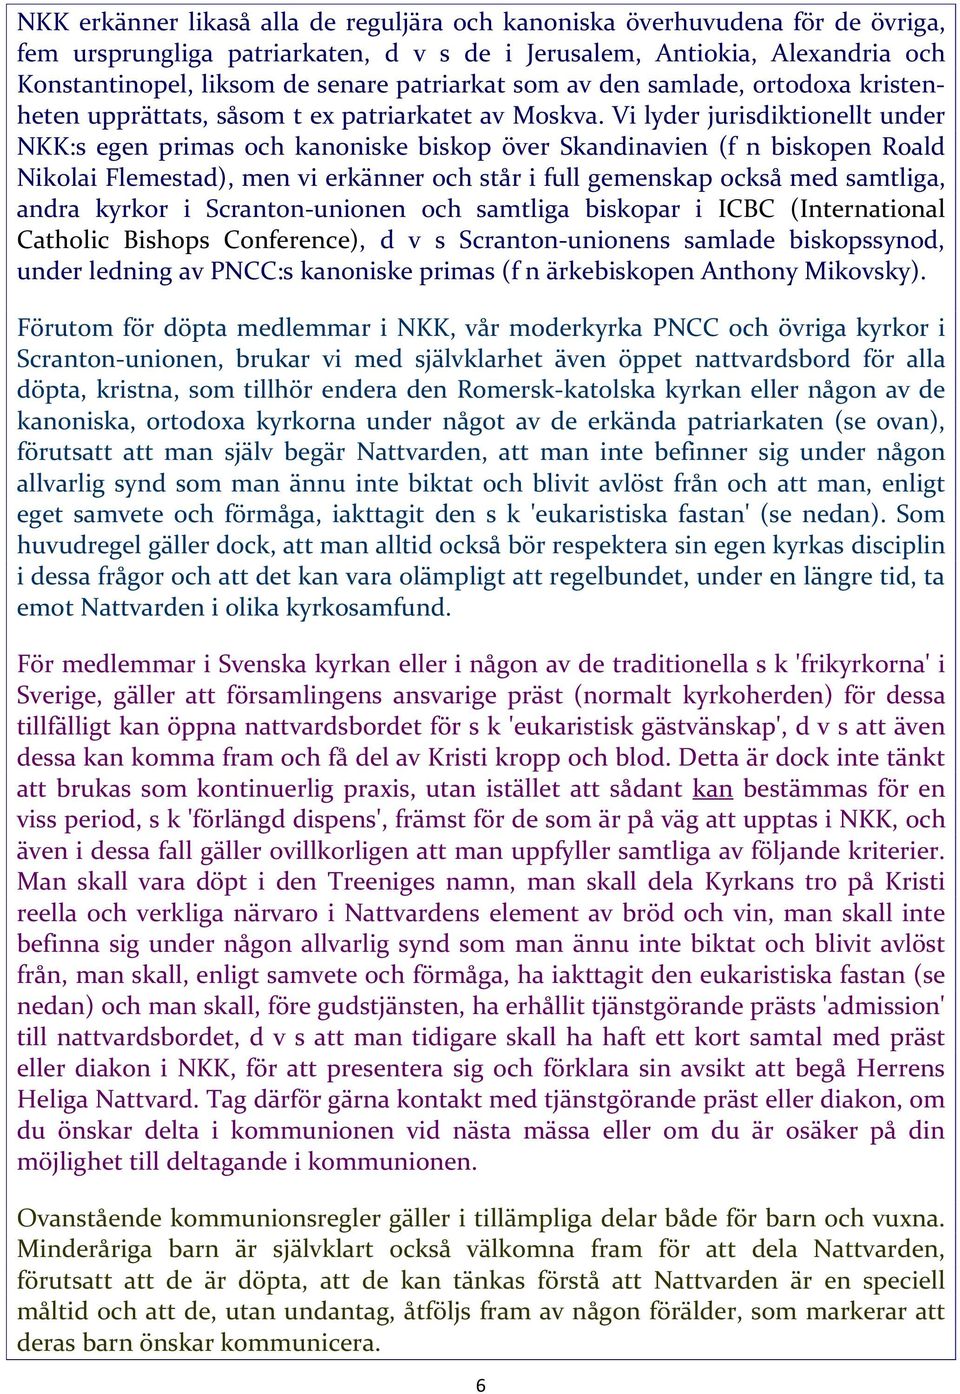 Vi lyder jurisdiktionellt under NKK:s egen primas och kanoniske biskop över Skandinavien (f n biskopen Roald Nikolai Flemestad), men vi erkänner och står i full gemenskap också med samtliga, andra